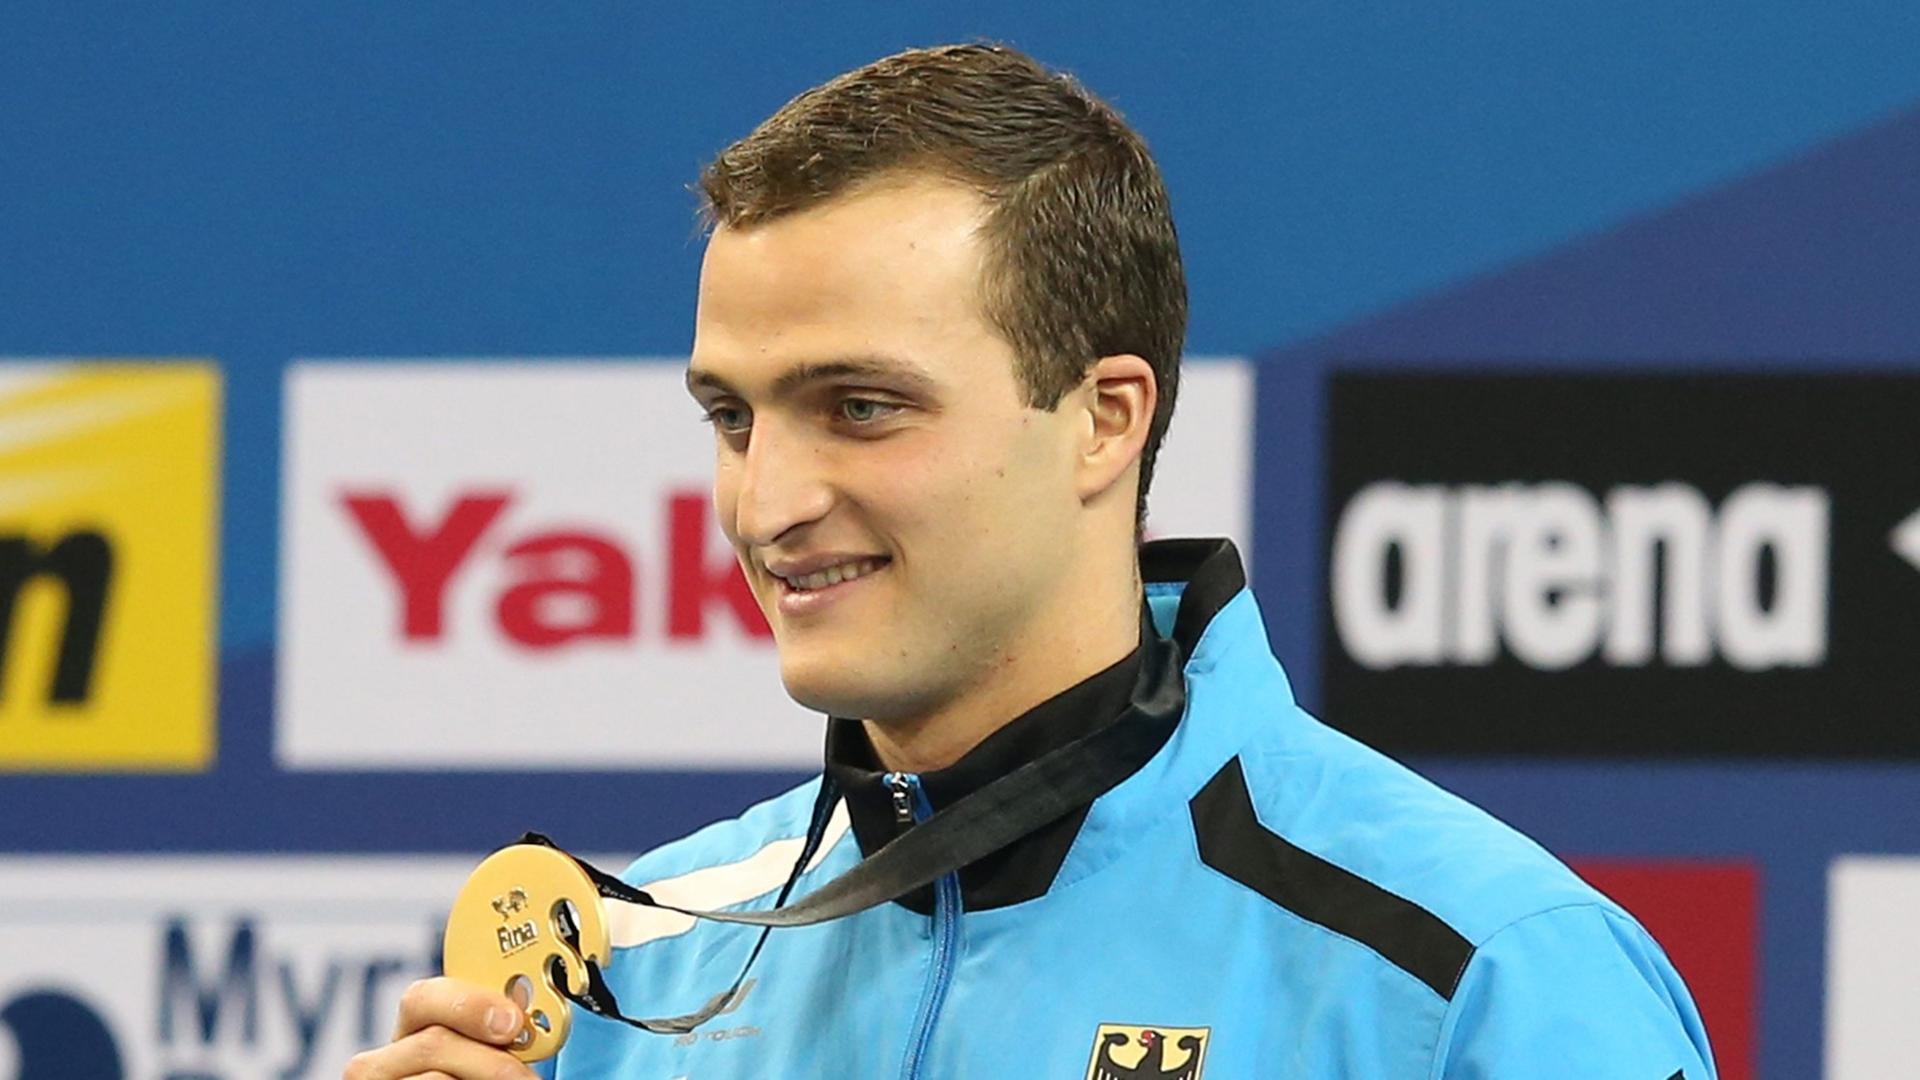 Weltmeister mit Weltrekord: Schwimmer Markus Deibler feiert seinen ersten Platz in 100 m Lagen bei den Weltmeisterschaften von 2014 in Doha